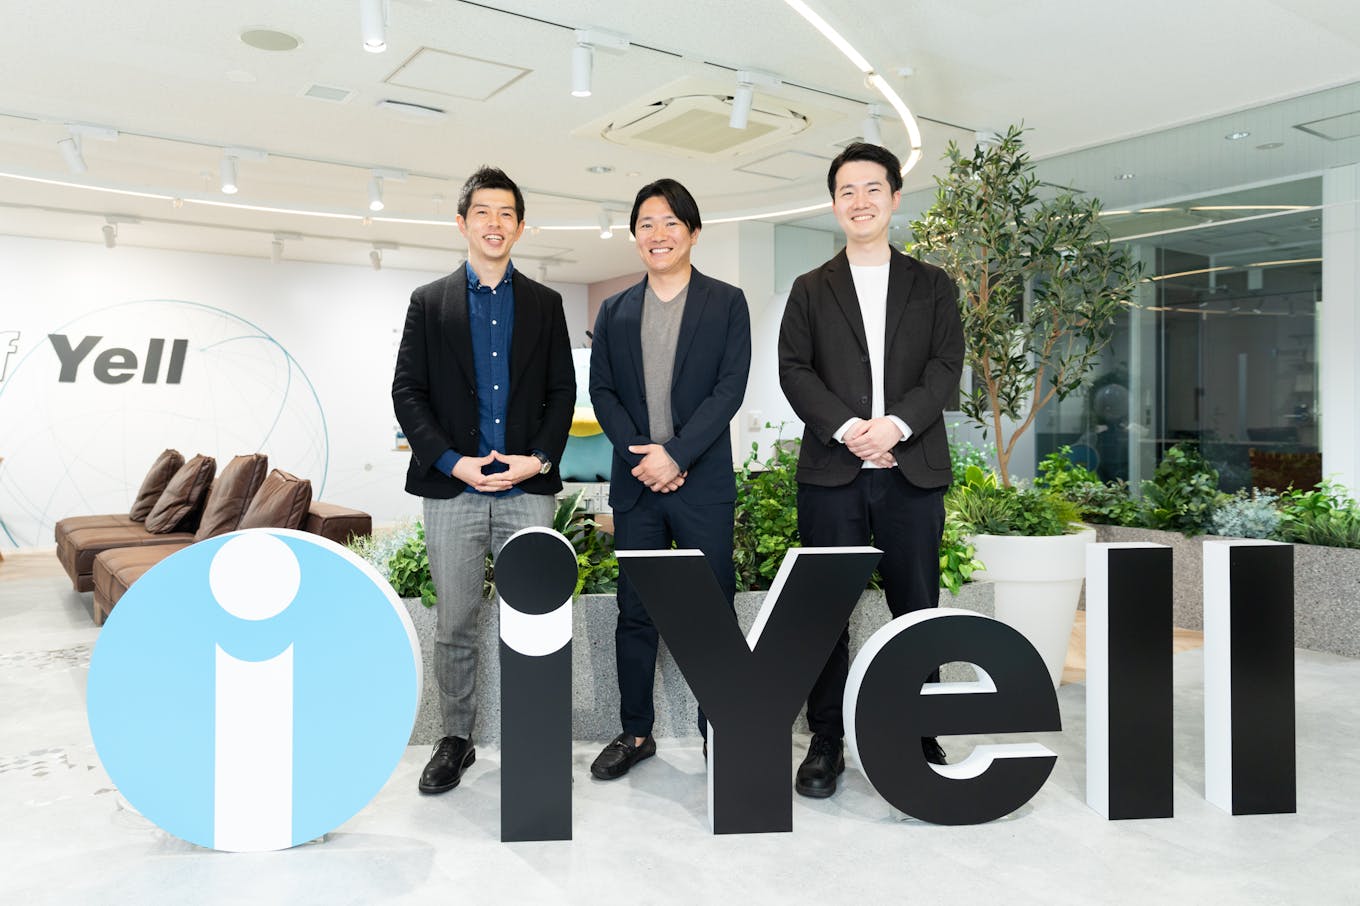 左から、取締役CFO 早坂、代表取締役社長 兼 CEO 窪田、IR 兼 経営企画室 岸本